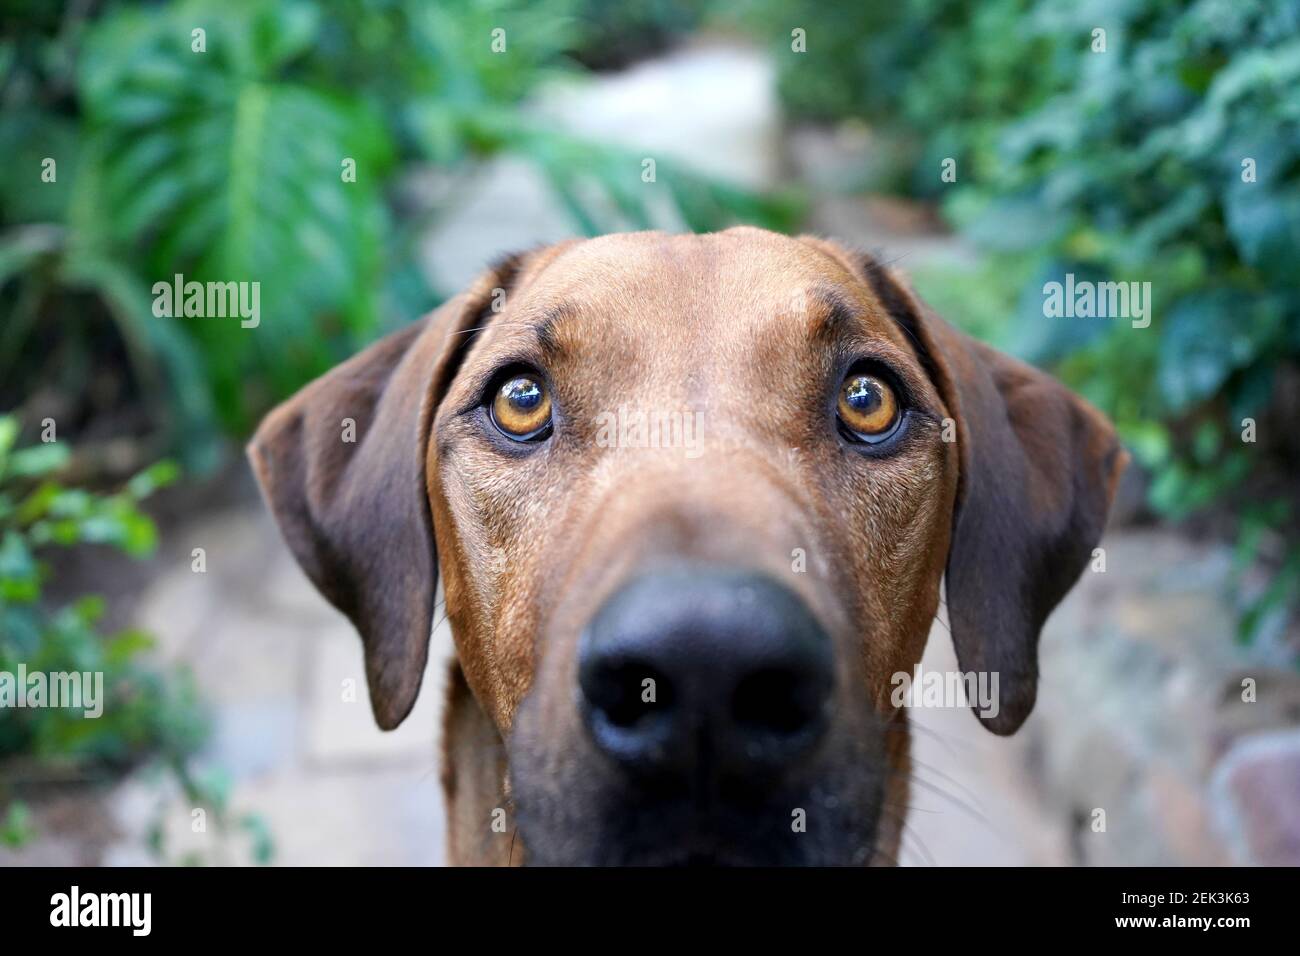 Close up of a big brown dog looking at camera Stock Photo